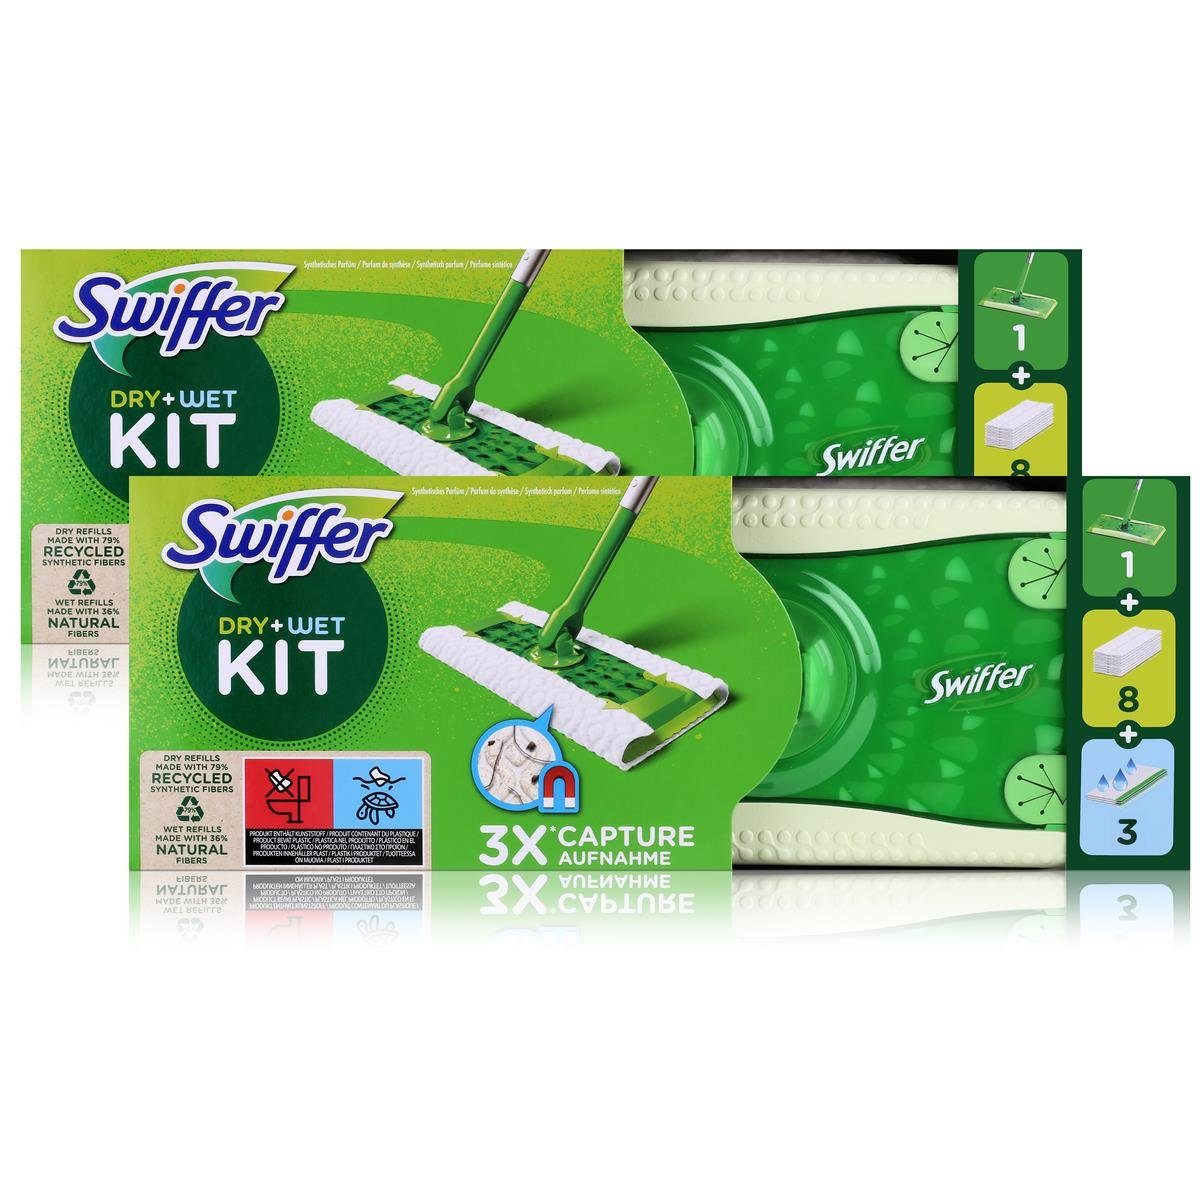 Bodentücher Swiffer Dry+Wet Kit und Pack Staubmagnet Bodenwischer Swiffer (2er Fussbodenreiniger